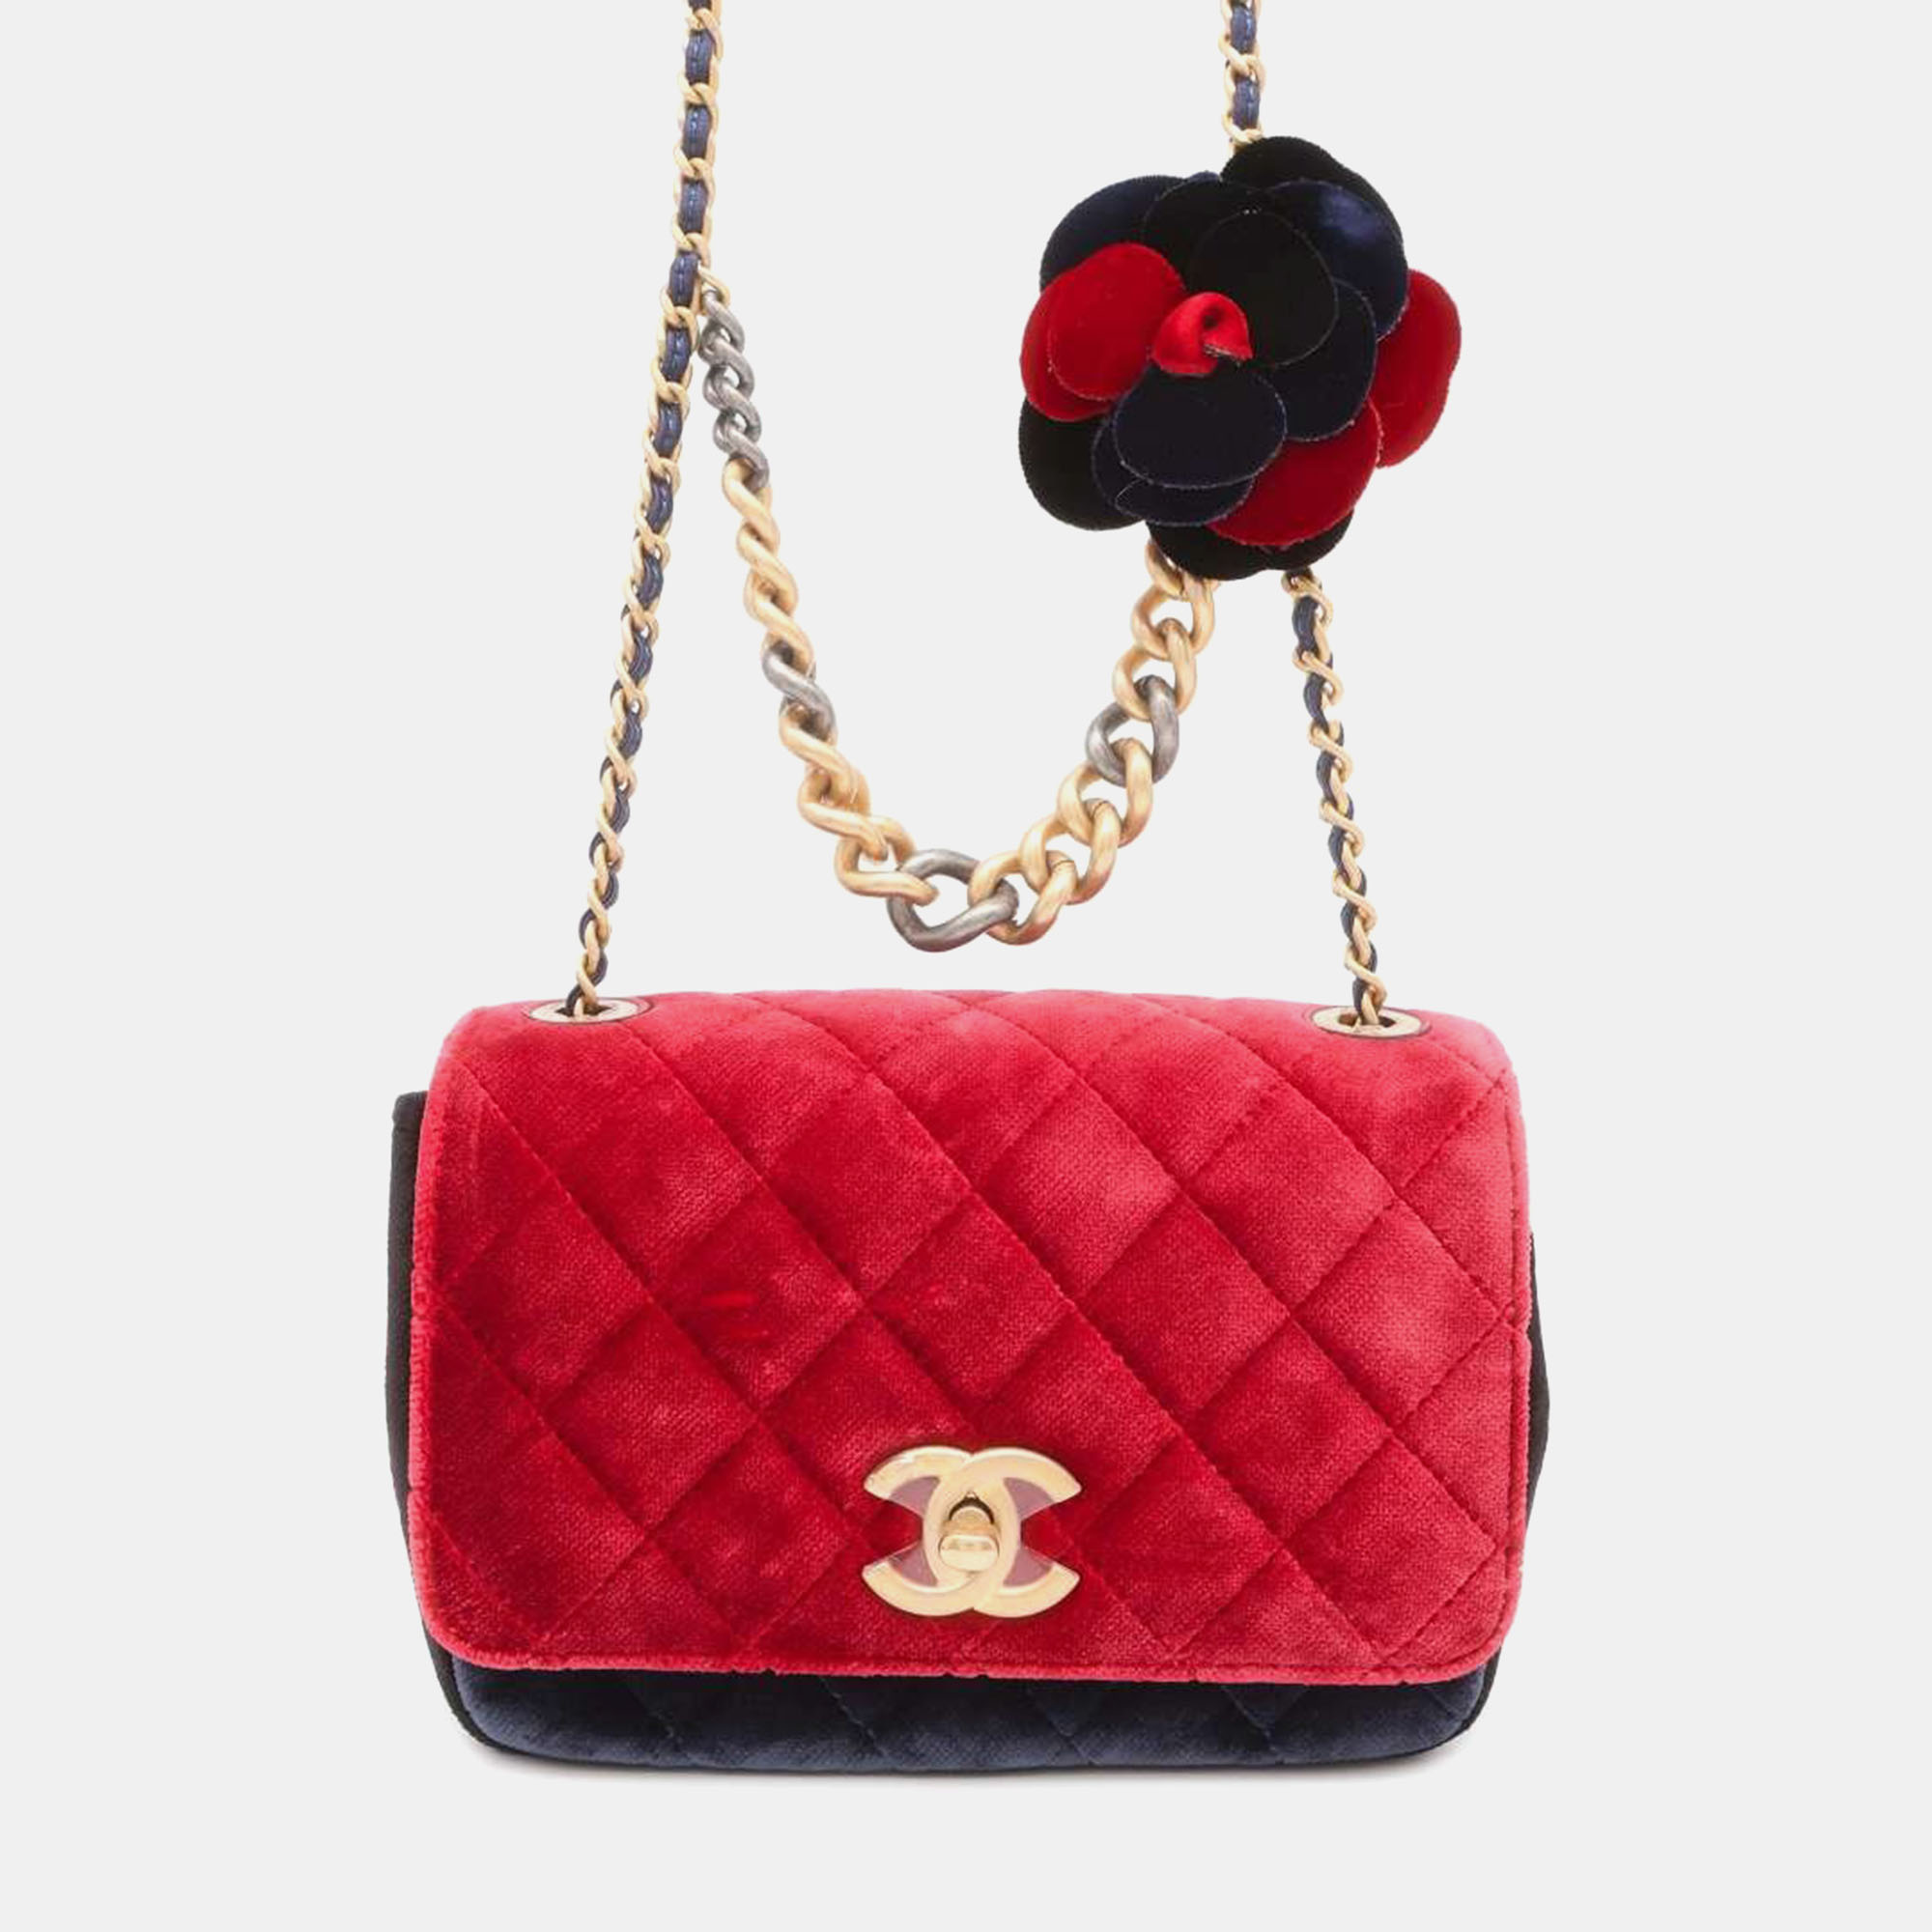 Chanel red/navy blue velour camellia shoulder bag